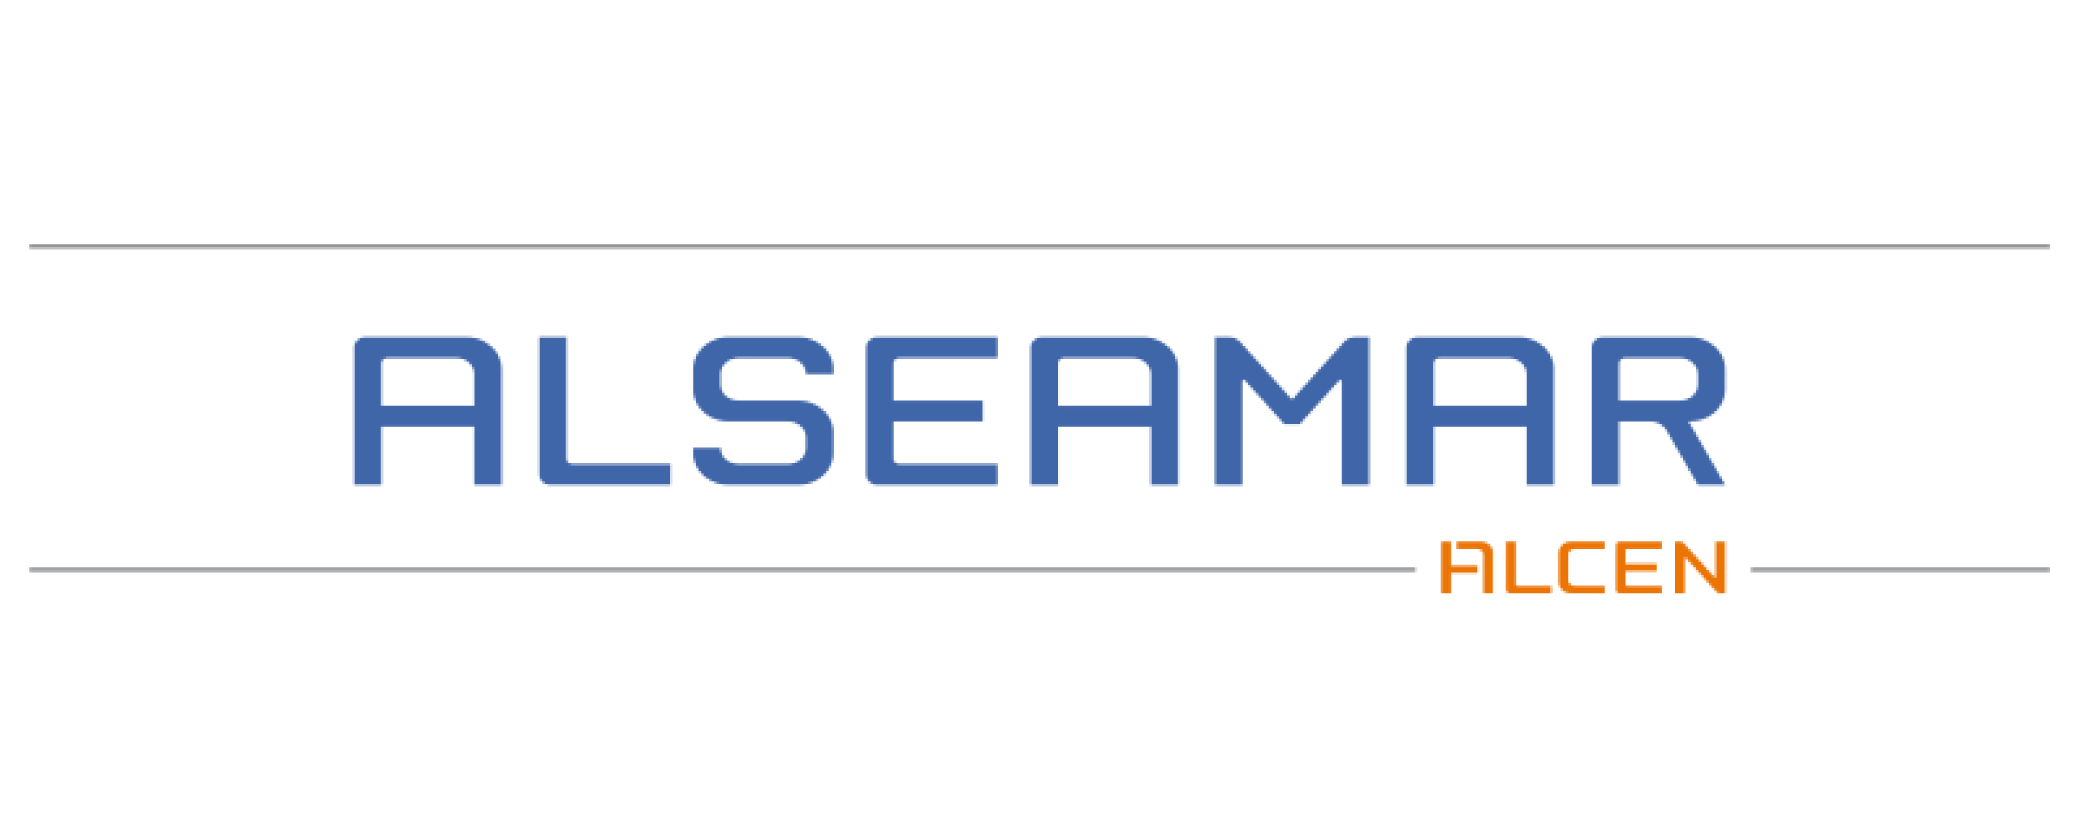 Alseamar logo